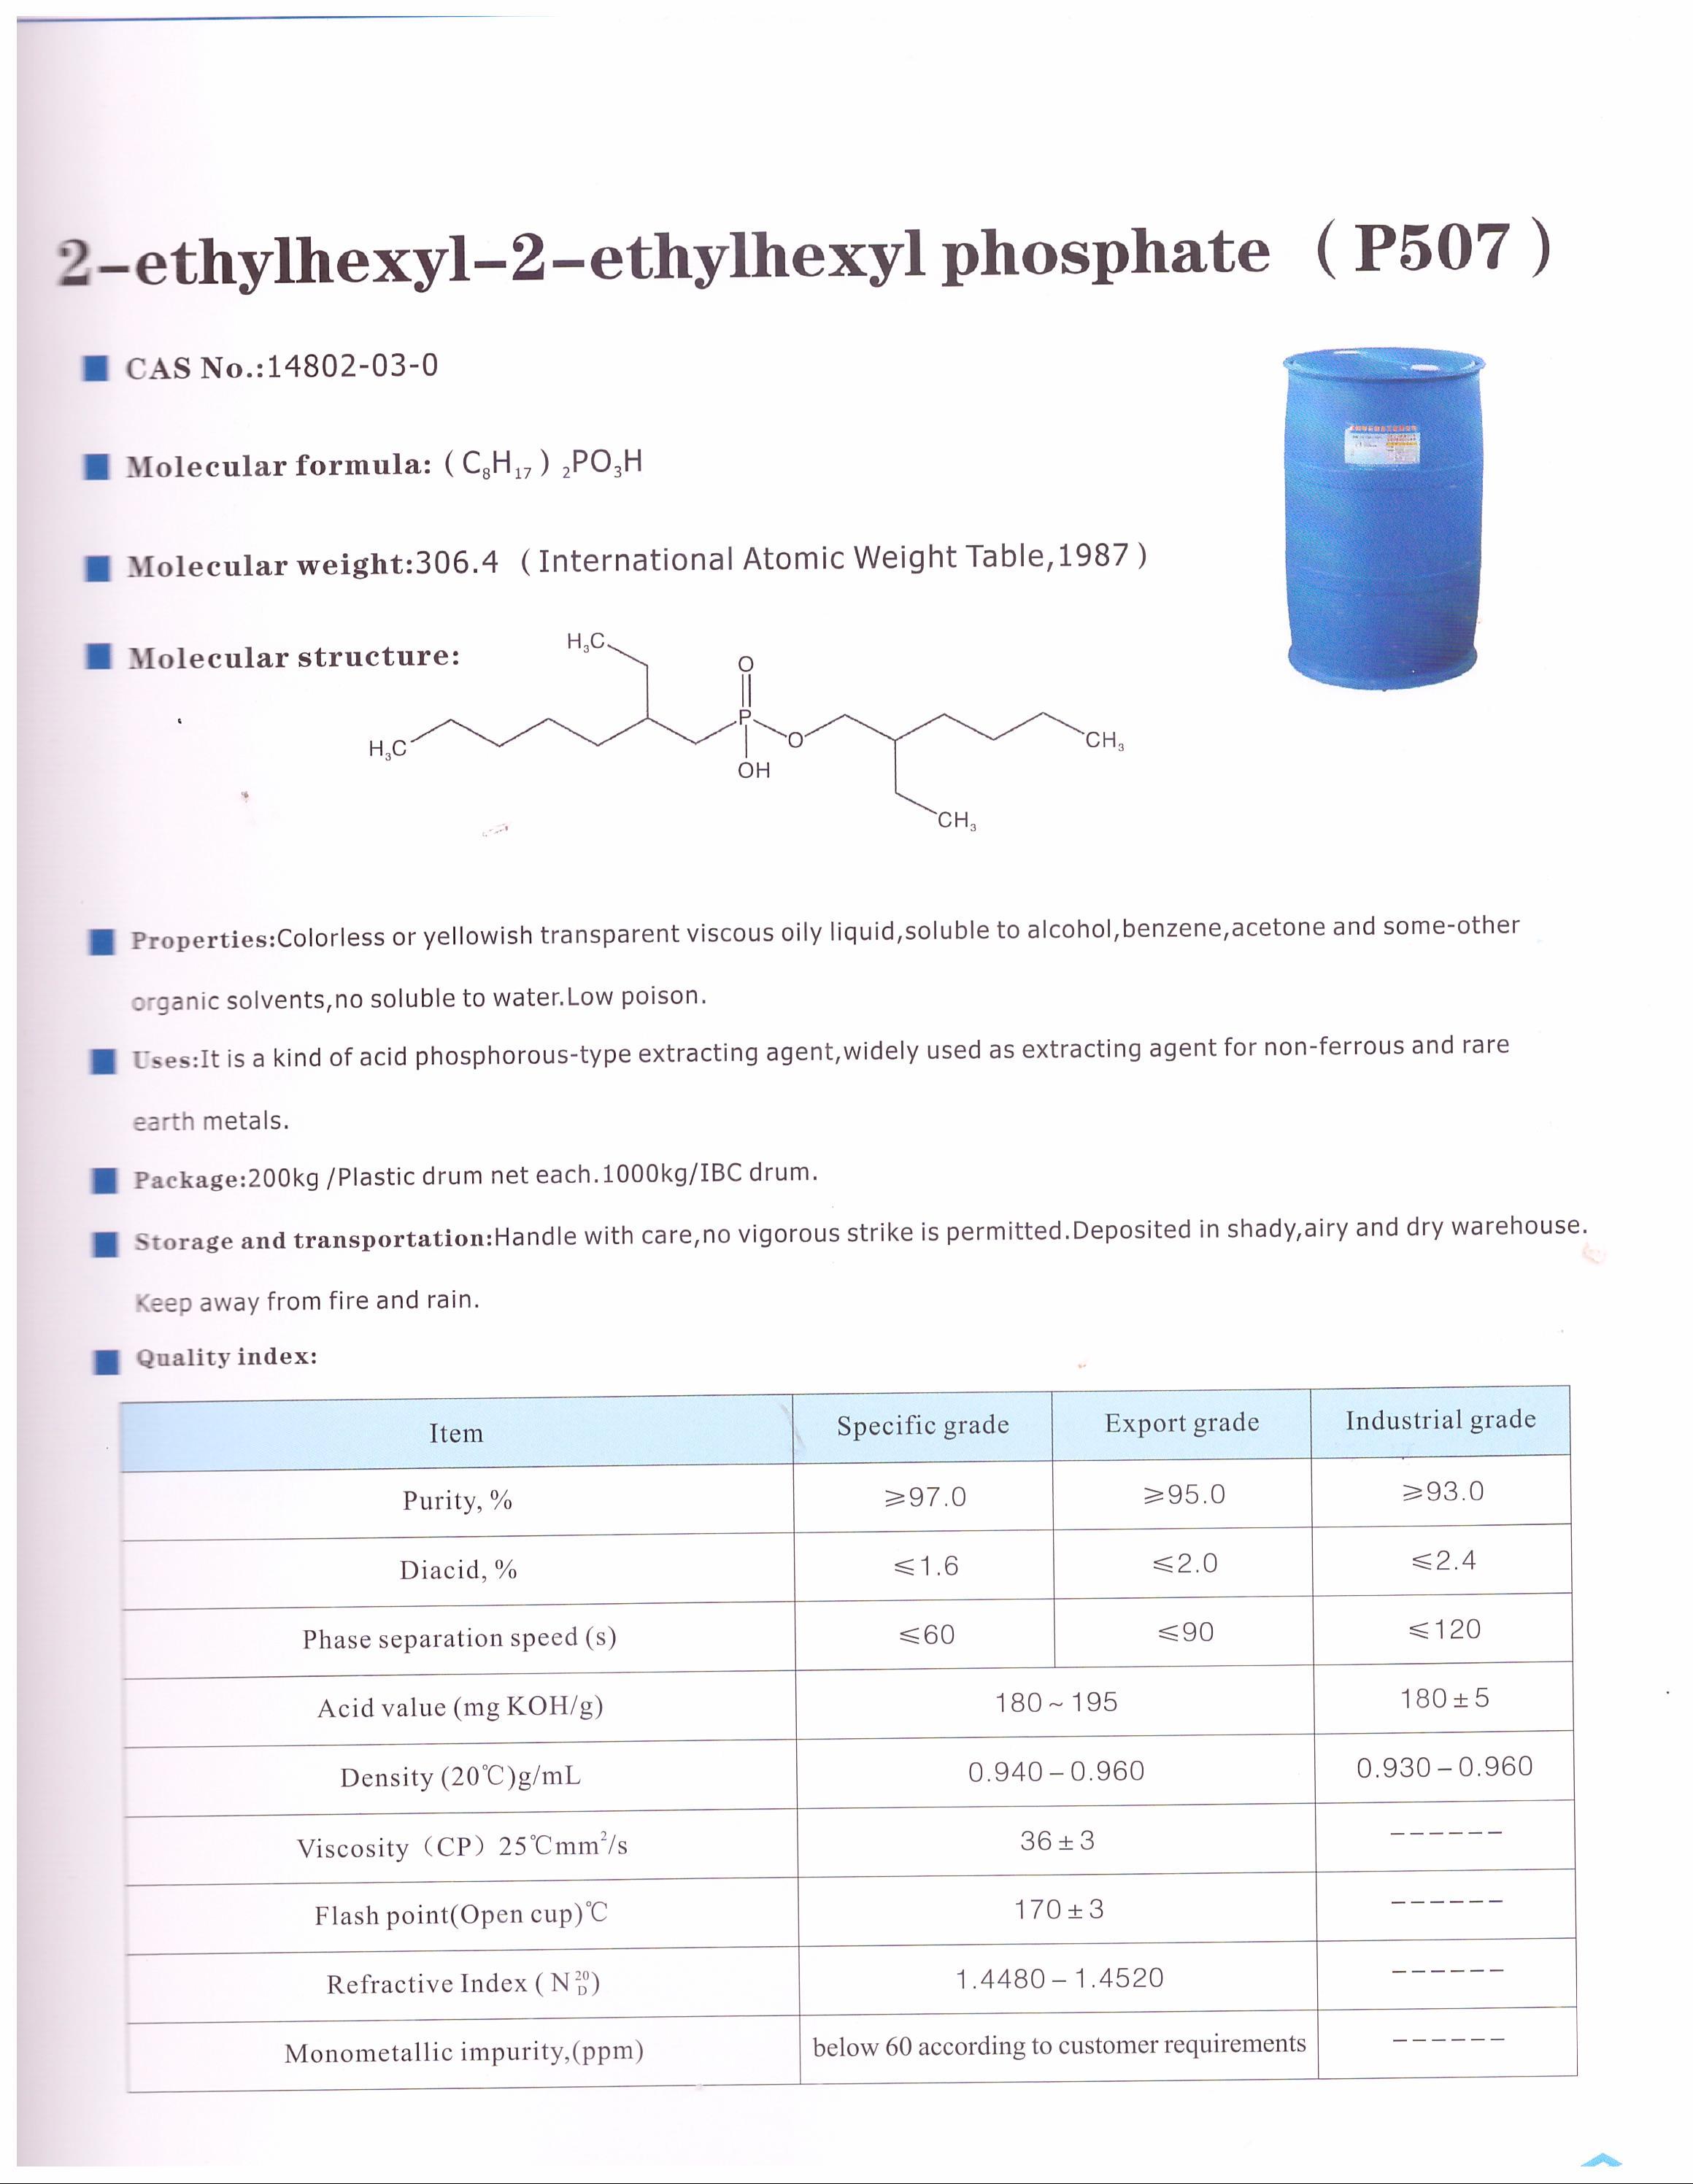 2-ethylhexyl-2-ethylhxyl phosphate  (P507).jpg